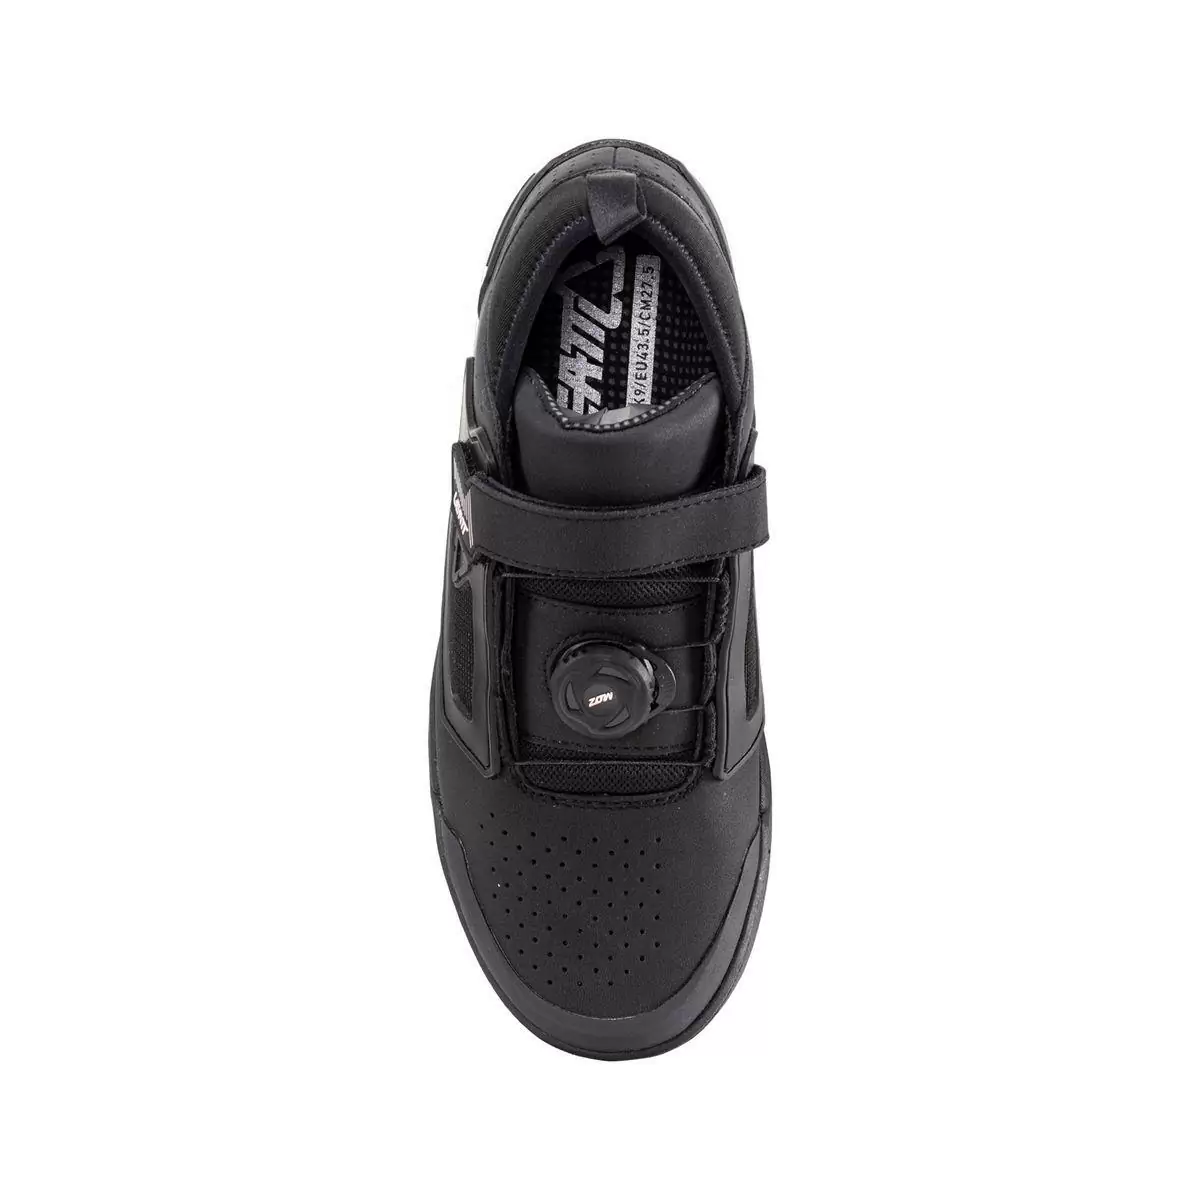 Chaussures VTT Pro Flat 3.0 noir taille 38,5 #3